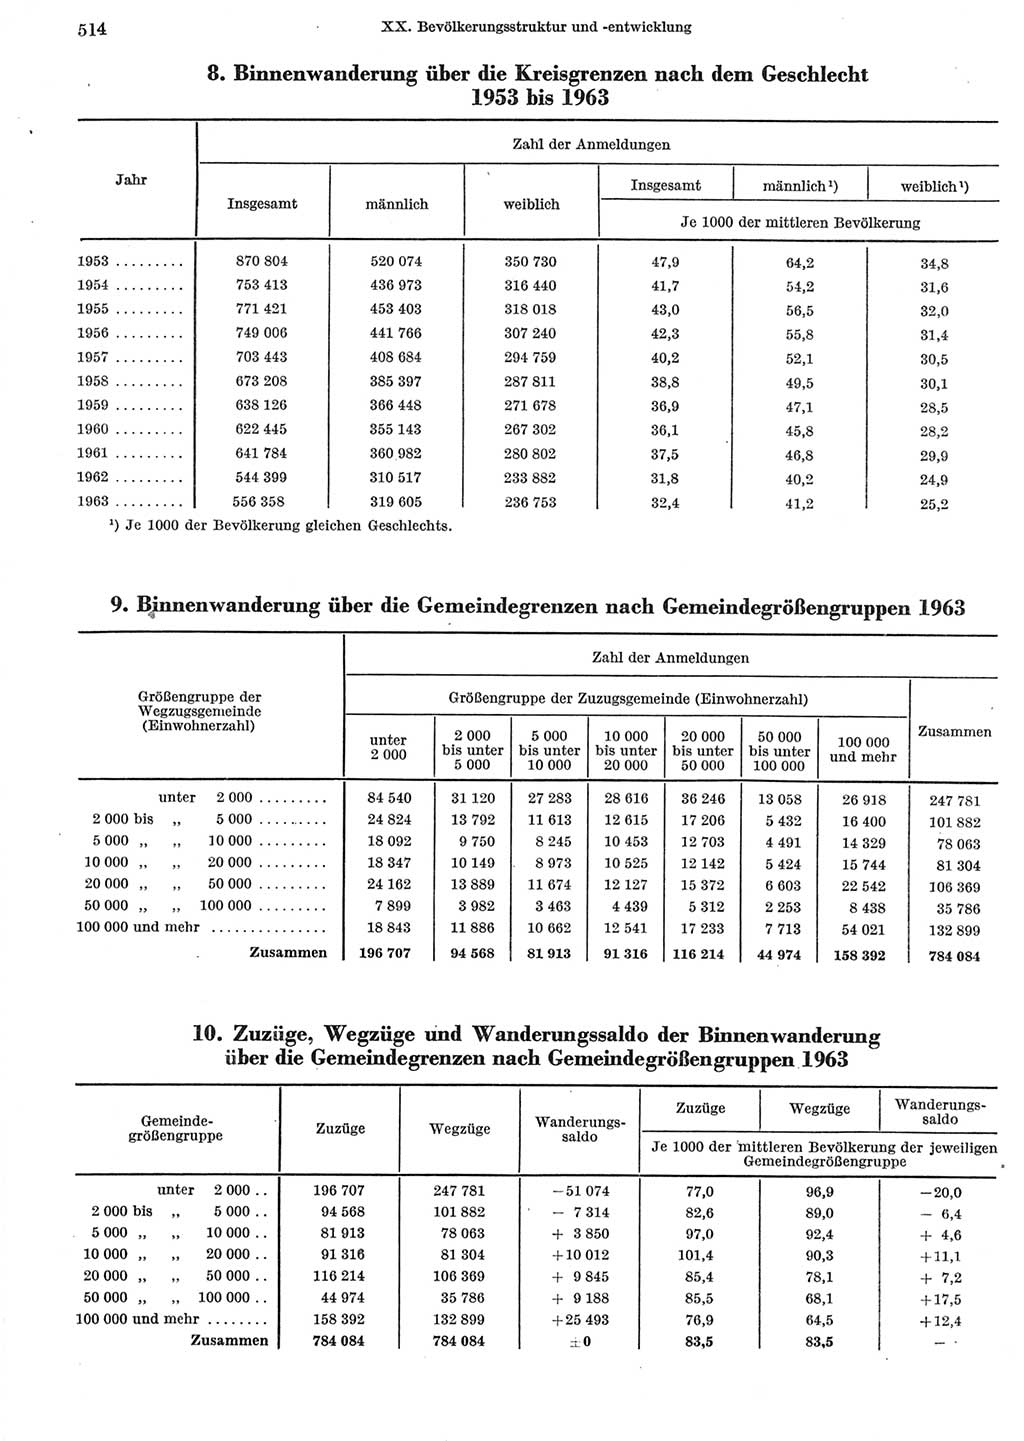 Statistisches Jahrbuch der Deutschen Demokratischen Republik (DDR) 1965, Seite 514 (Stat. Jb. DDR 1965, S. 514)